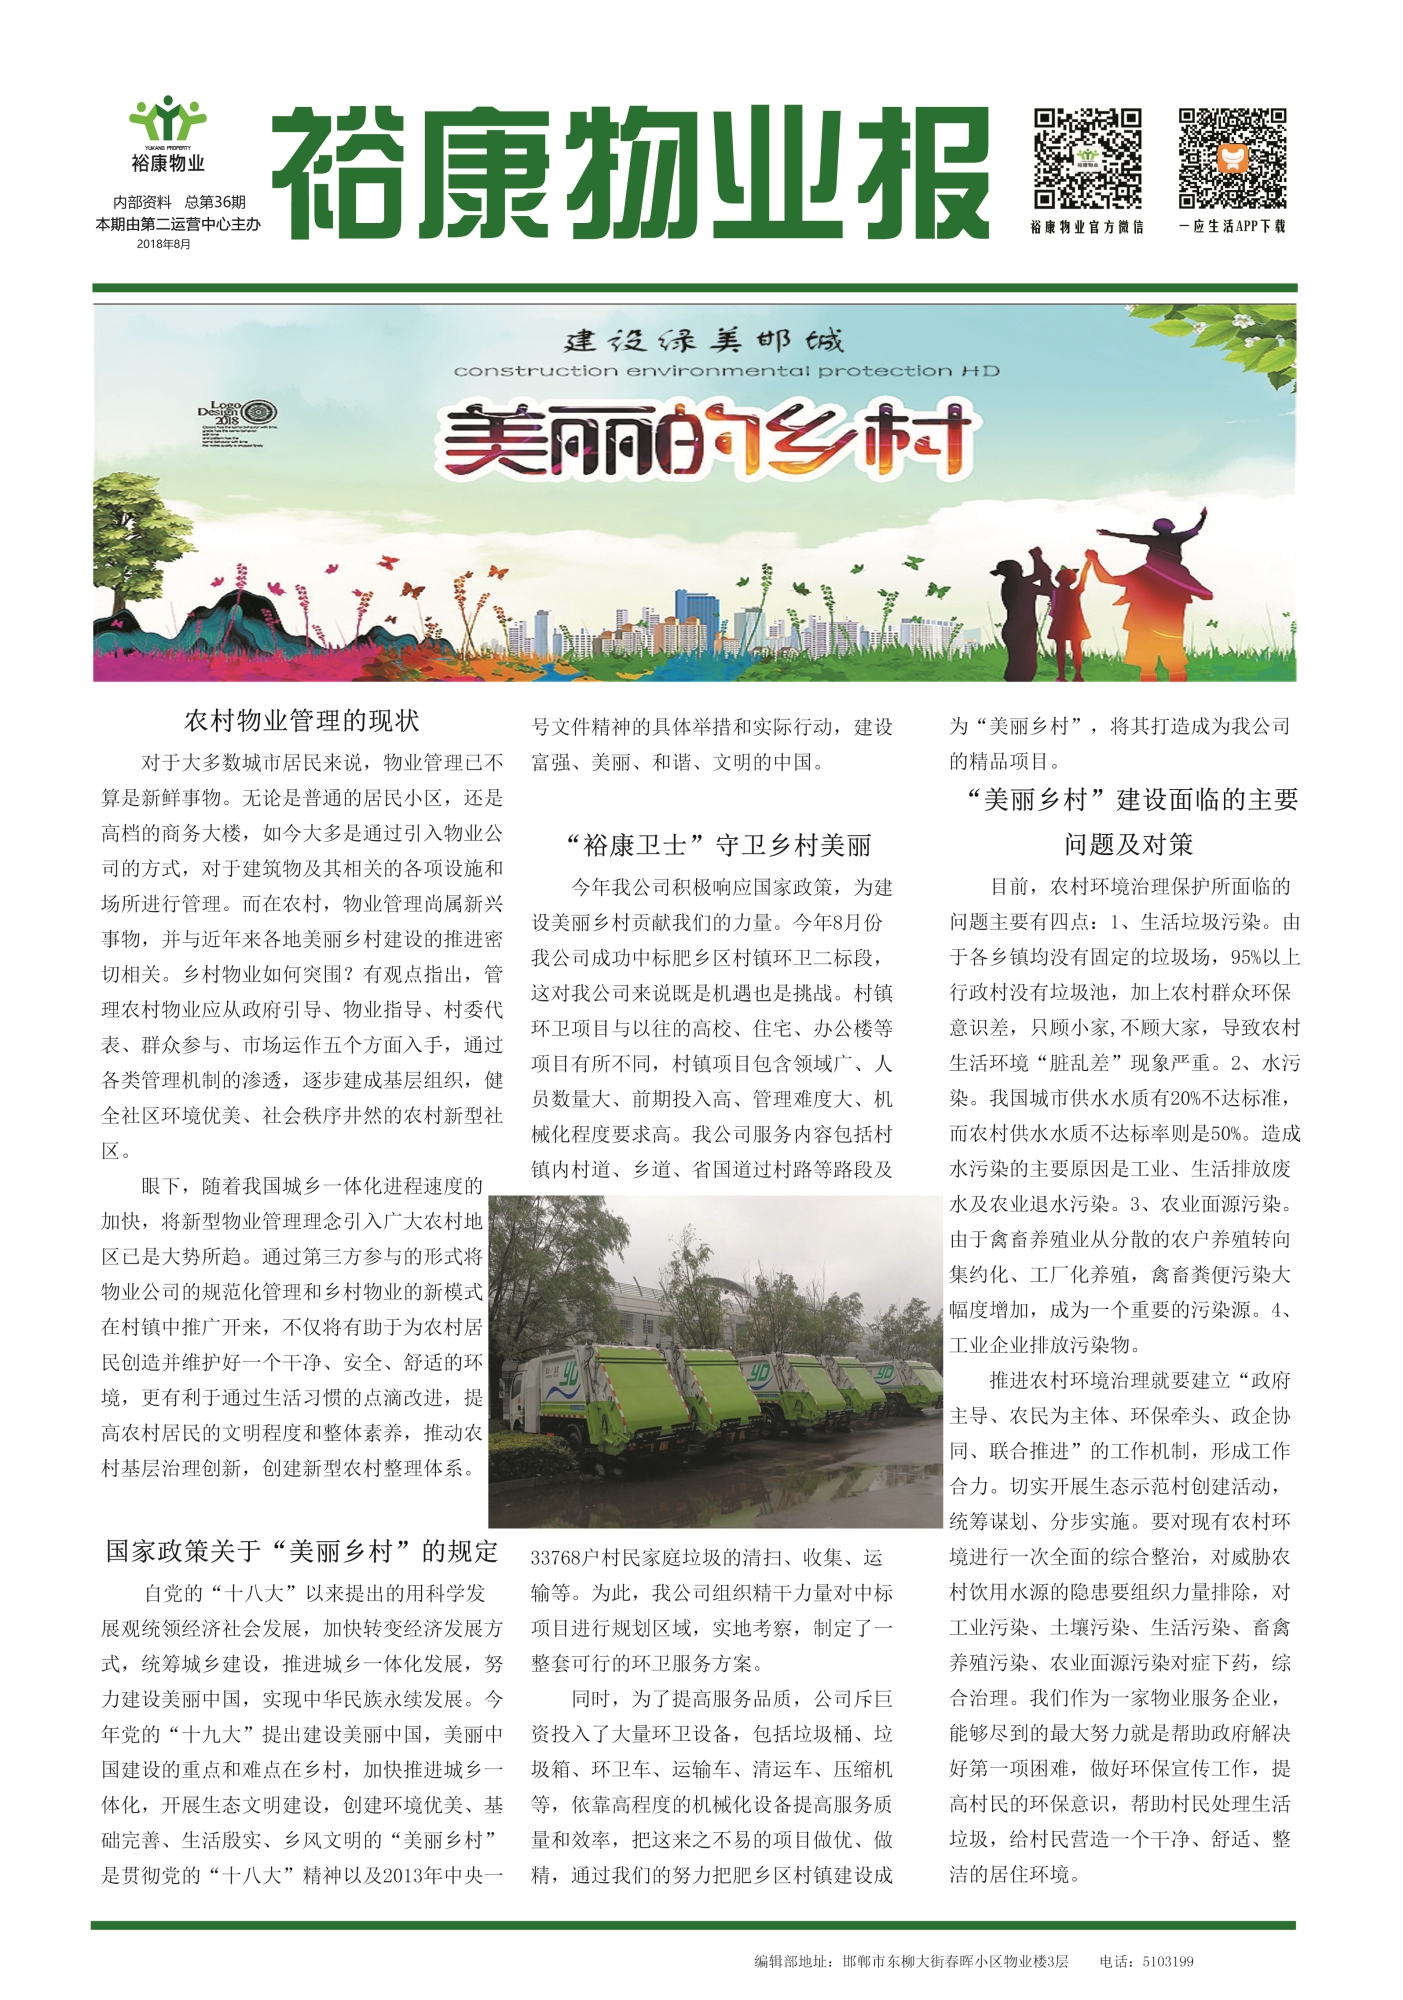 2018年8月刊--“美麗鄉村”建設綠美邯城